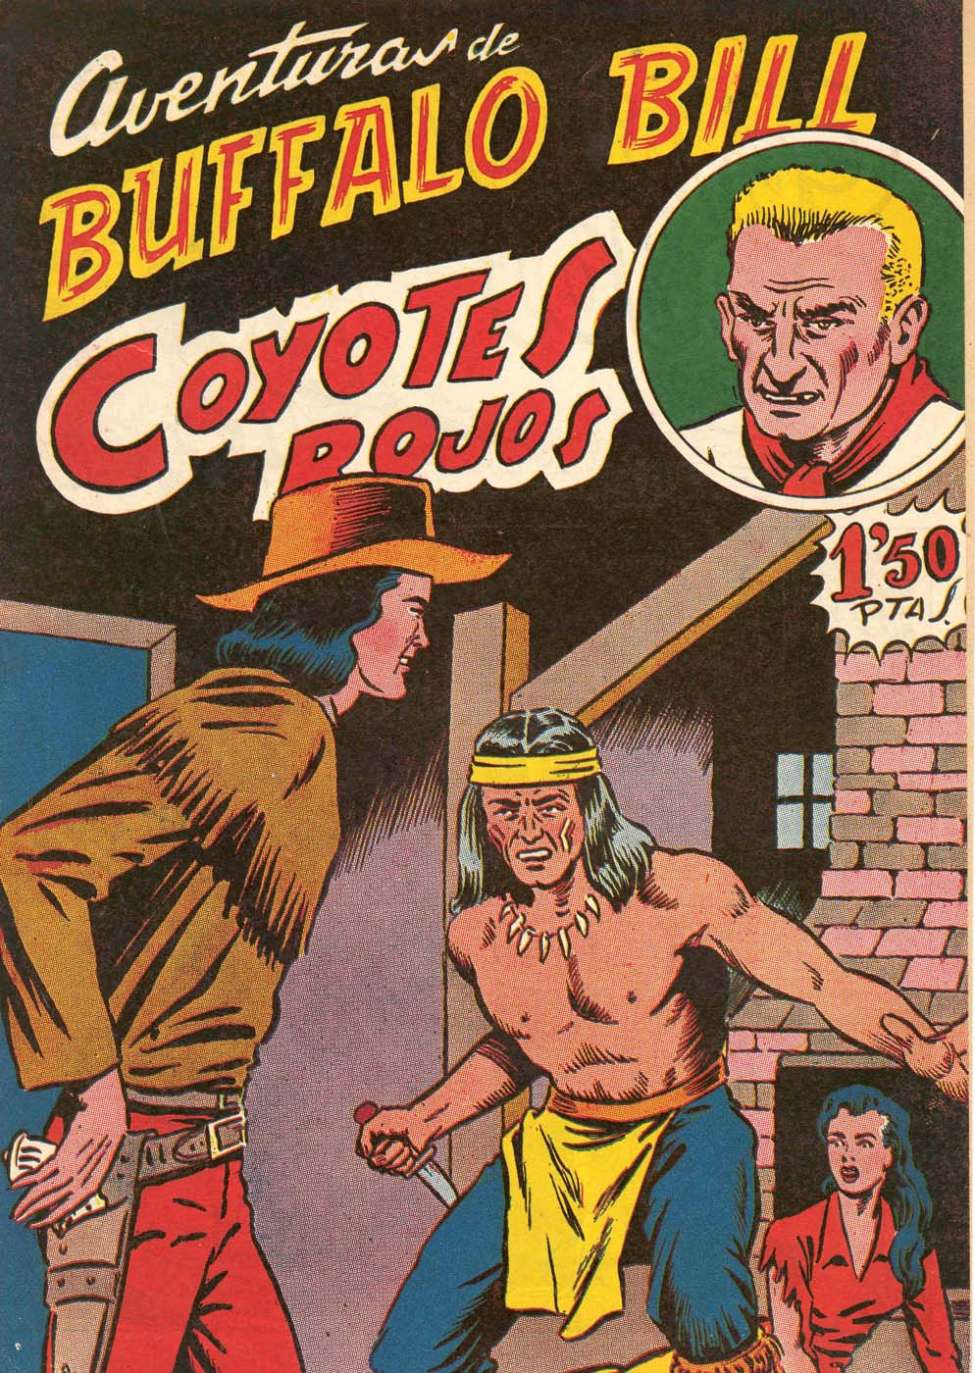 Comic Book Cover For Aventuras de Buffalo Bill 29 Coyotes rojos